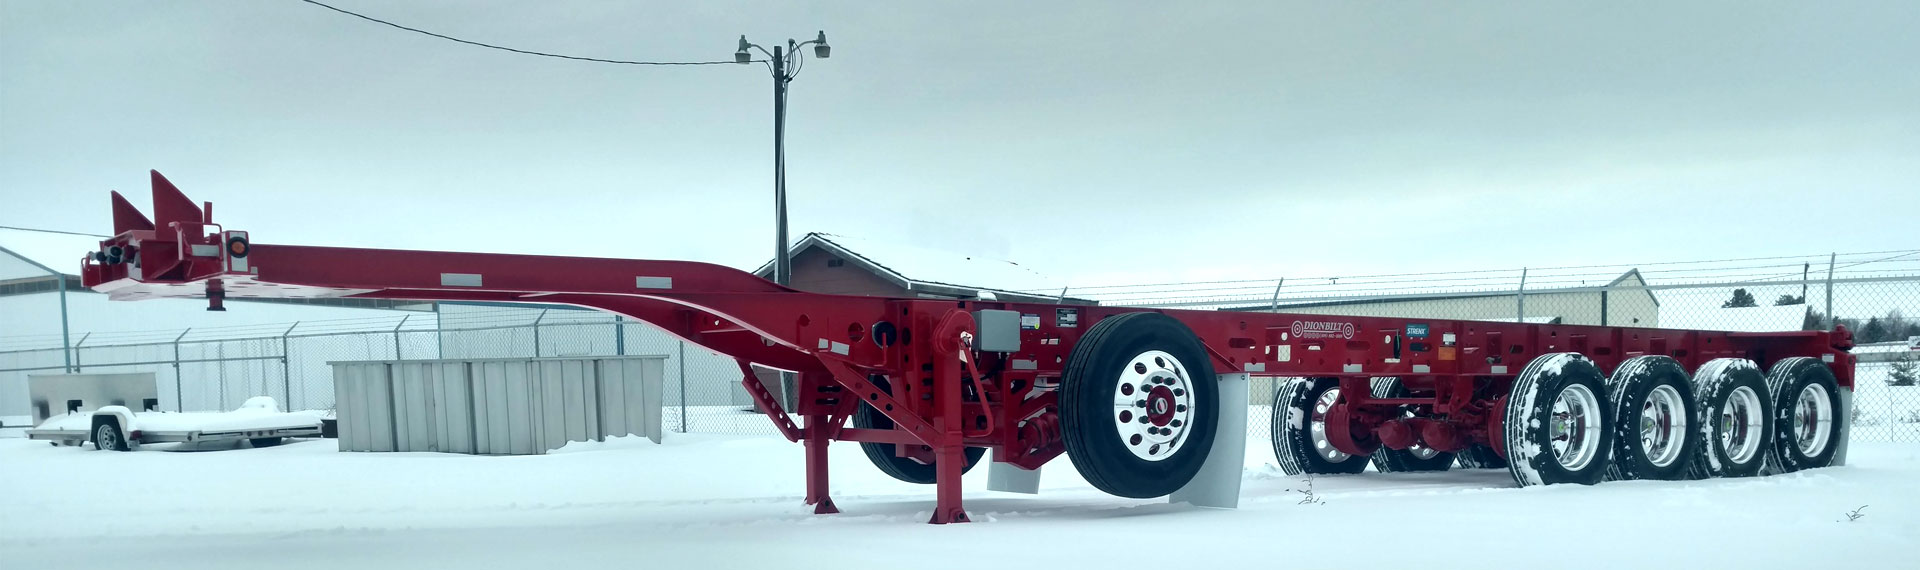 Długie lekkie podwozie przyczepy wykonane ze Strenx® 100 stoi na śnieżnym podłożu